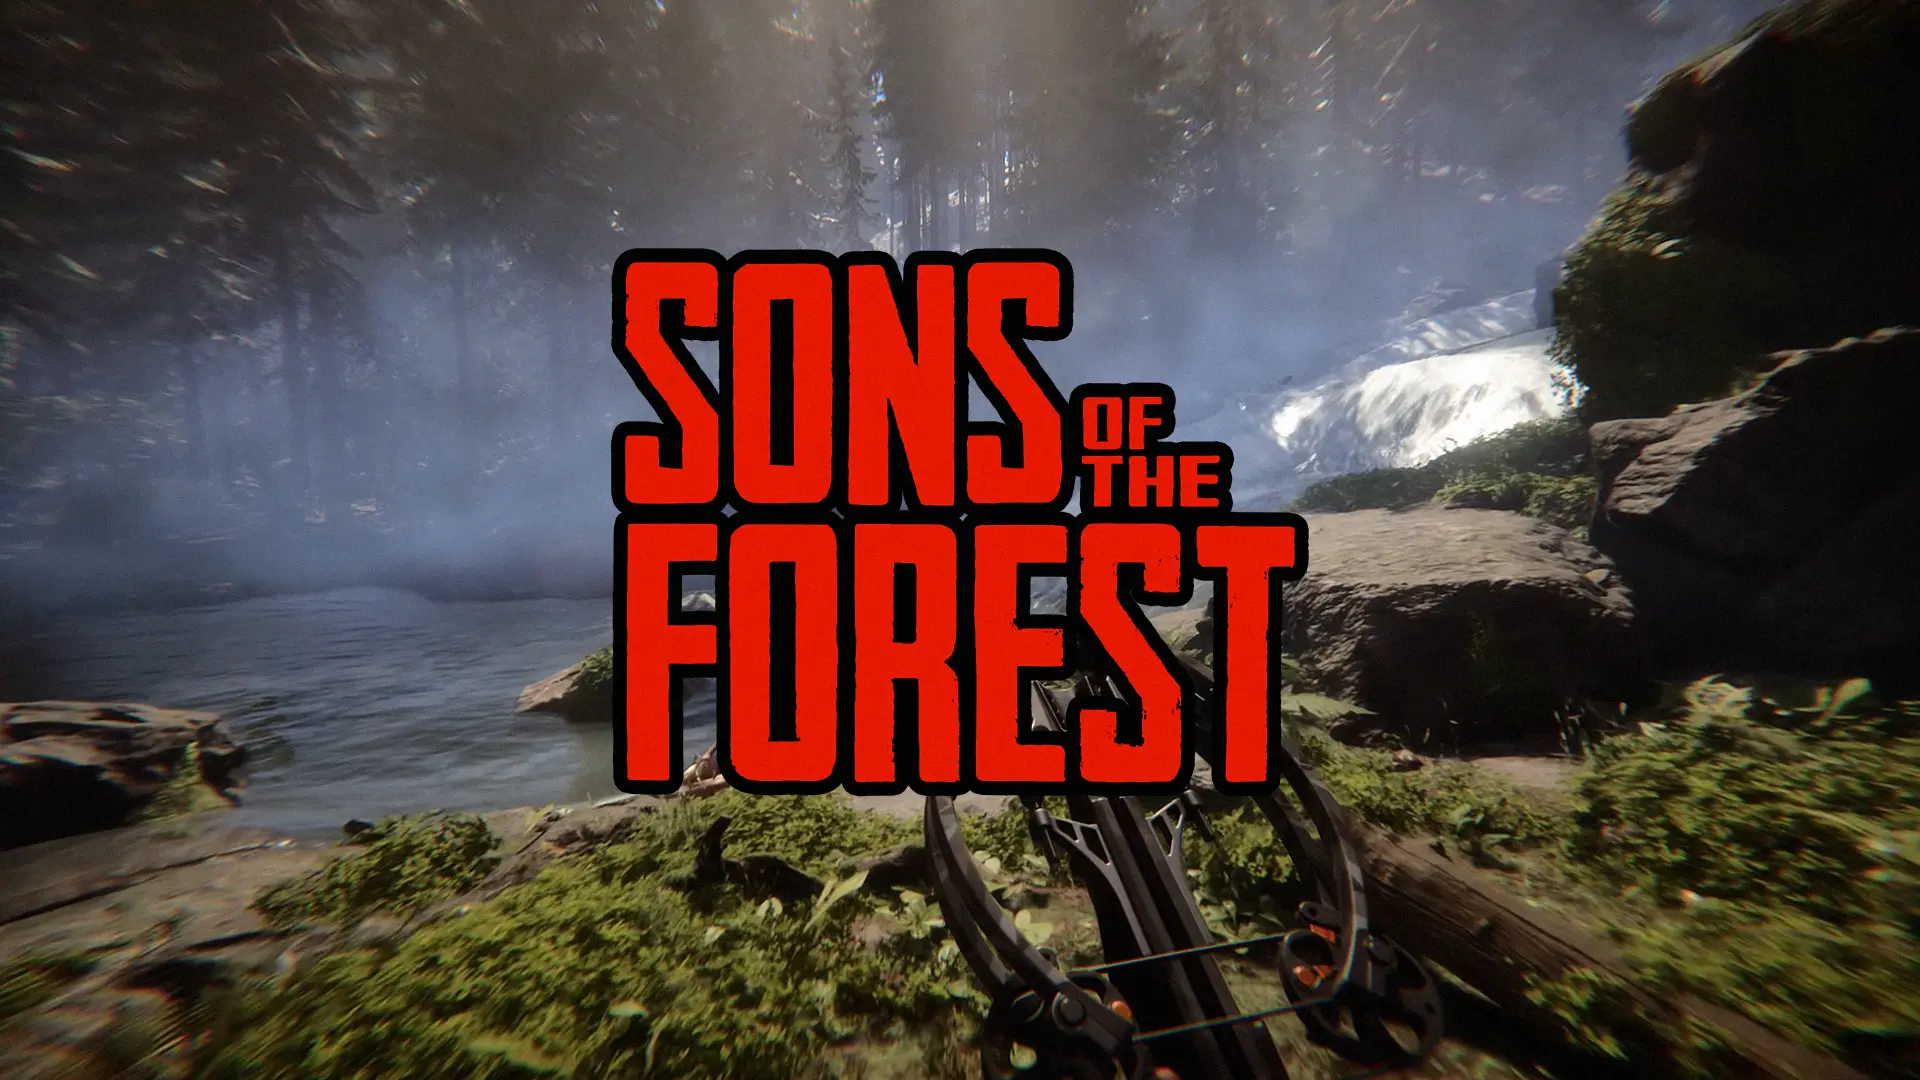 Sequência de The Forest, Sons of the Forest, é adiado para fevereiro de 2023